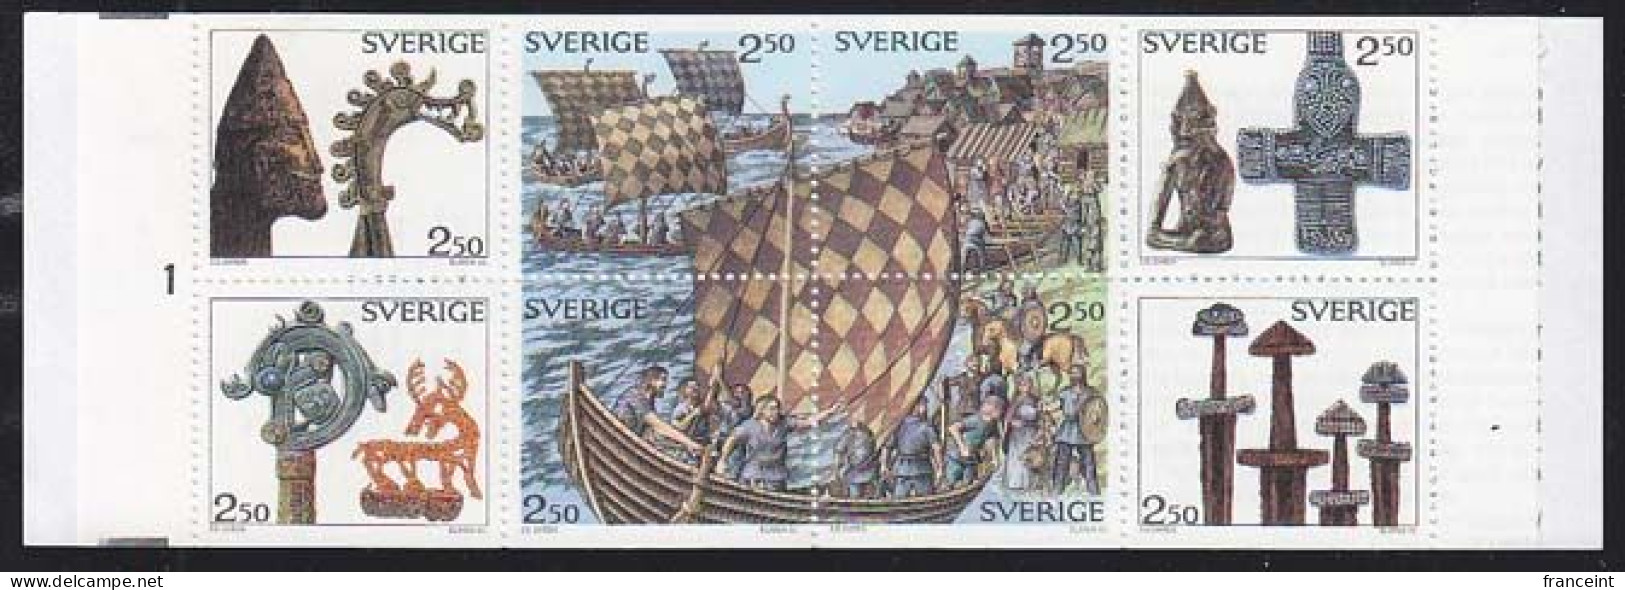 SWEDEN(1990) Vikings. Ship. Booklet Of 8 Stamps. Scott No 1808a. - Blokken & Velletjes